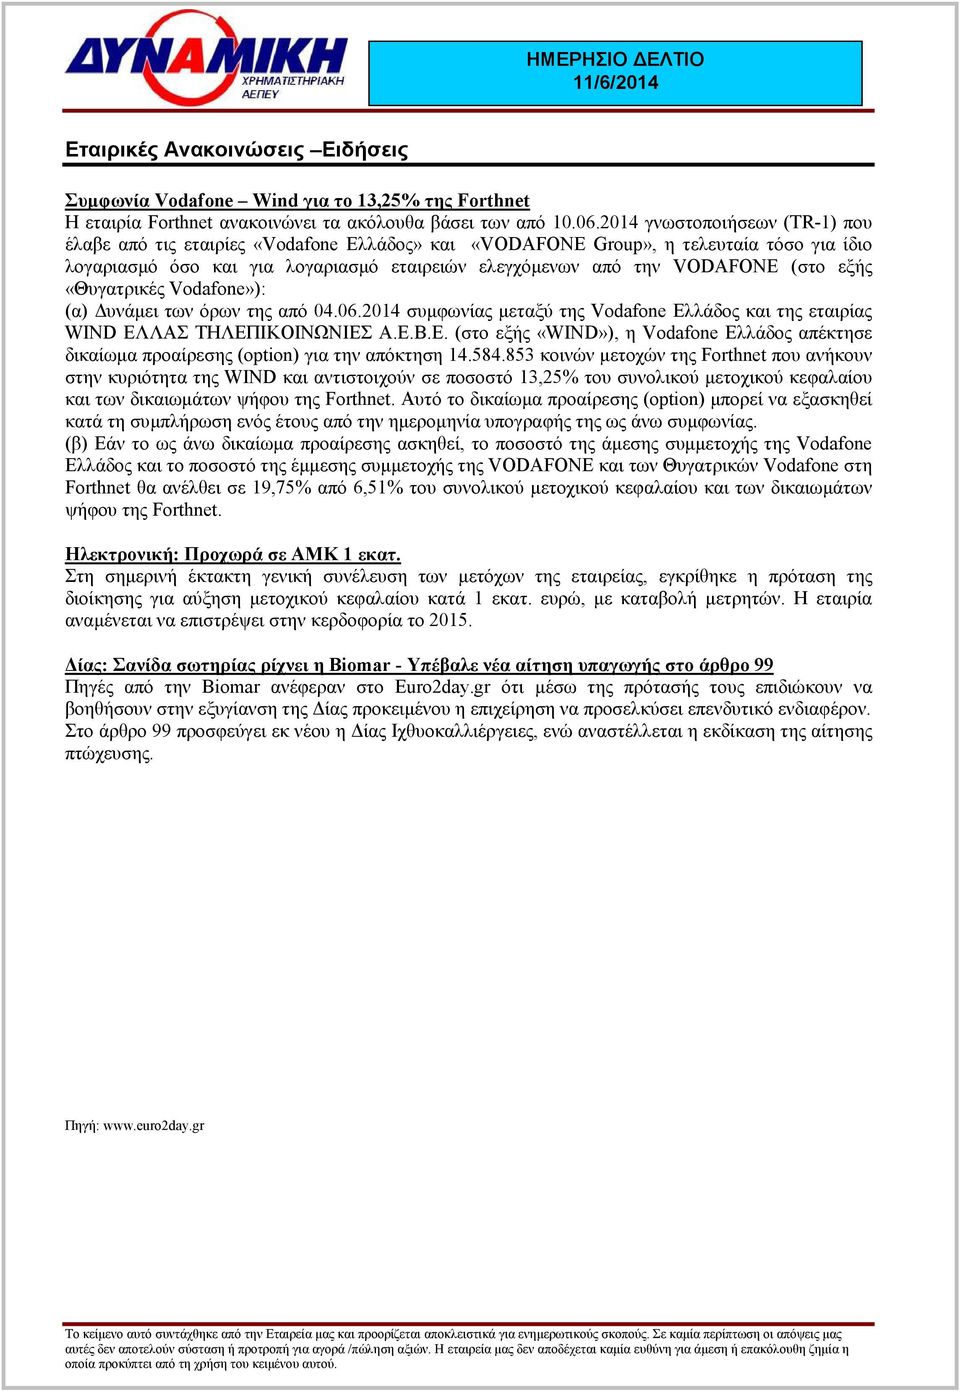 εξής «Θυγατρικές Vodafone»): (α) υνάµει των όρων της από 04.06.2014 συµφωνίας µεταξύ της Vodafone Ελλάδος και της εταιρίας WIND ΕΛΛΑΣ ΤΗΛΕΠΙΚΟΙΝΩΝΙΕΣ Α.Ε.Β.Ε. (στο εξής «WIND»), η Vodafone Ελλάδος απέκτησε δικαίωµα προαίρεσης (option) για την απόκτηση 14.